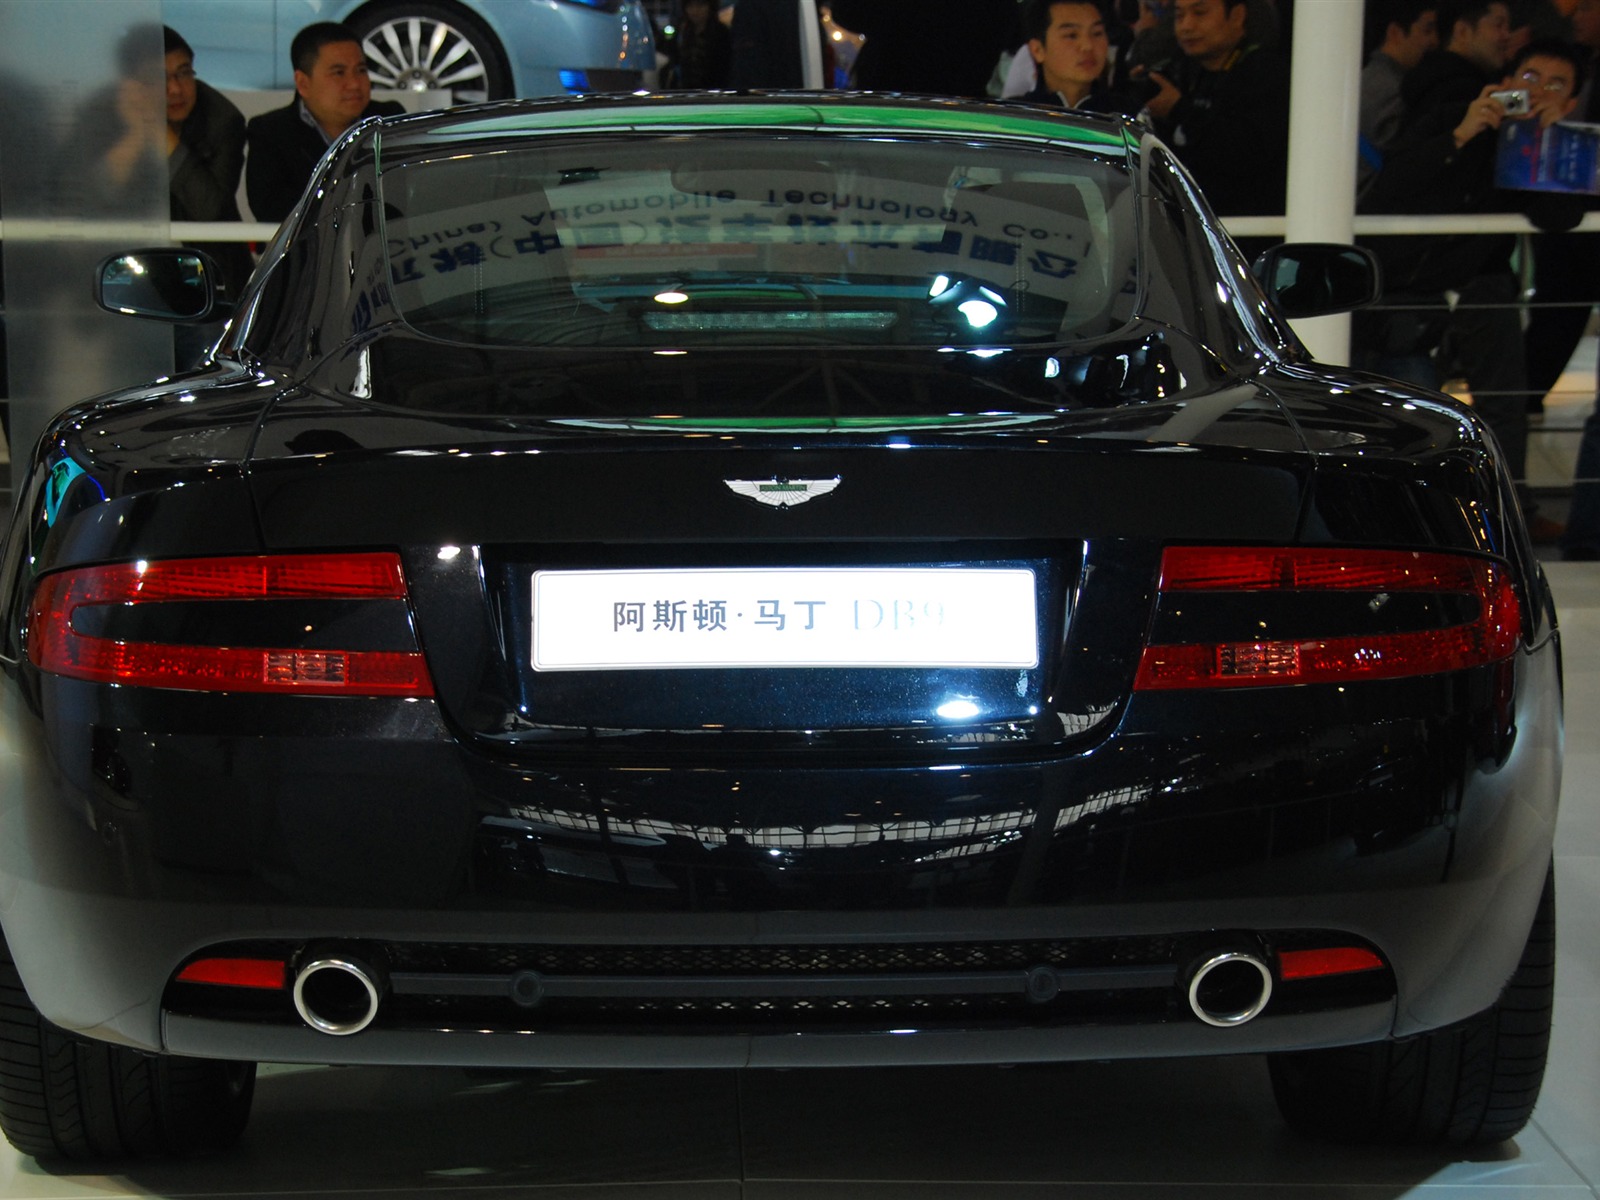 2010北京国际车展(一) (z321x123作品)30 - 1600x1200